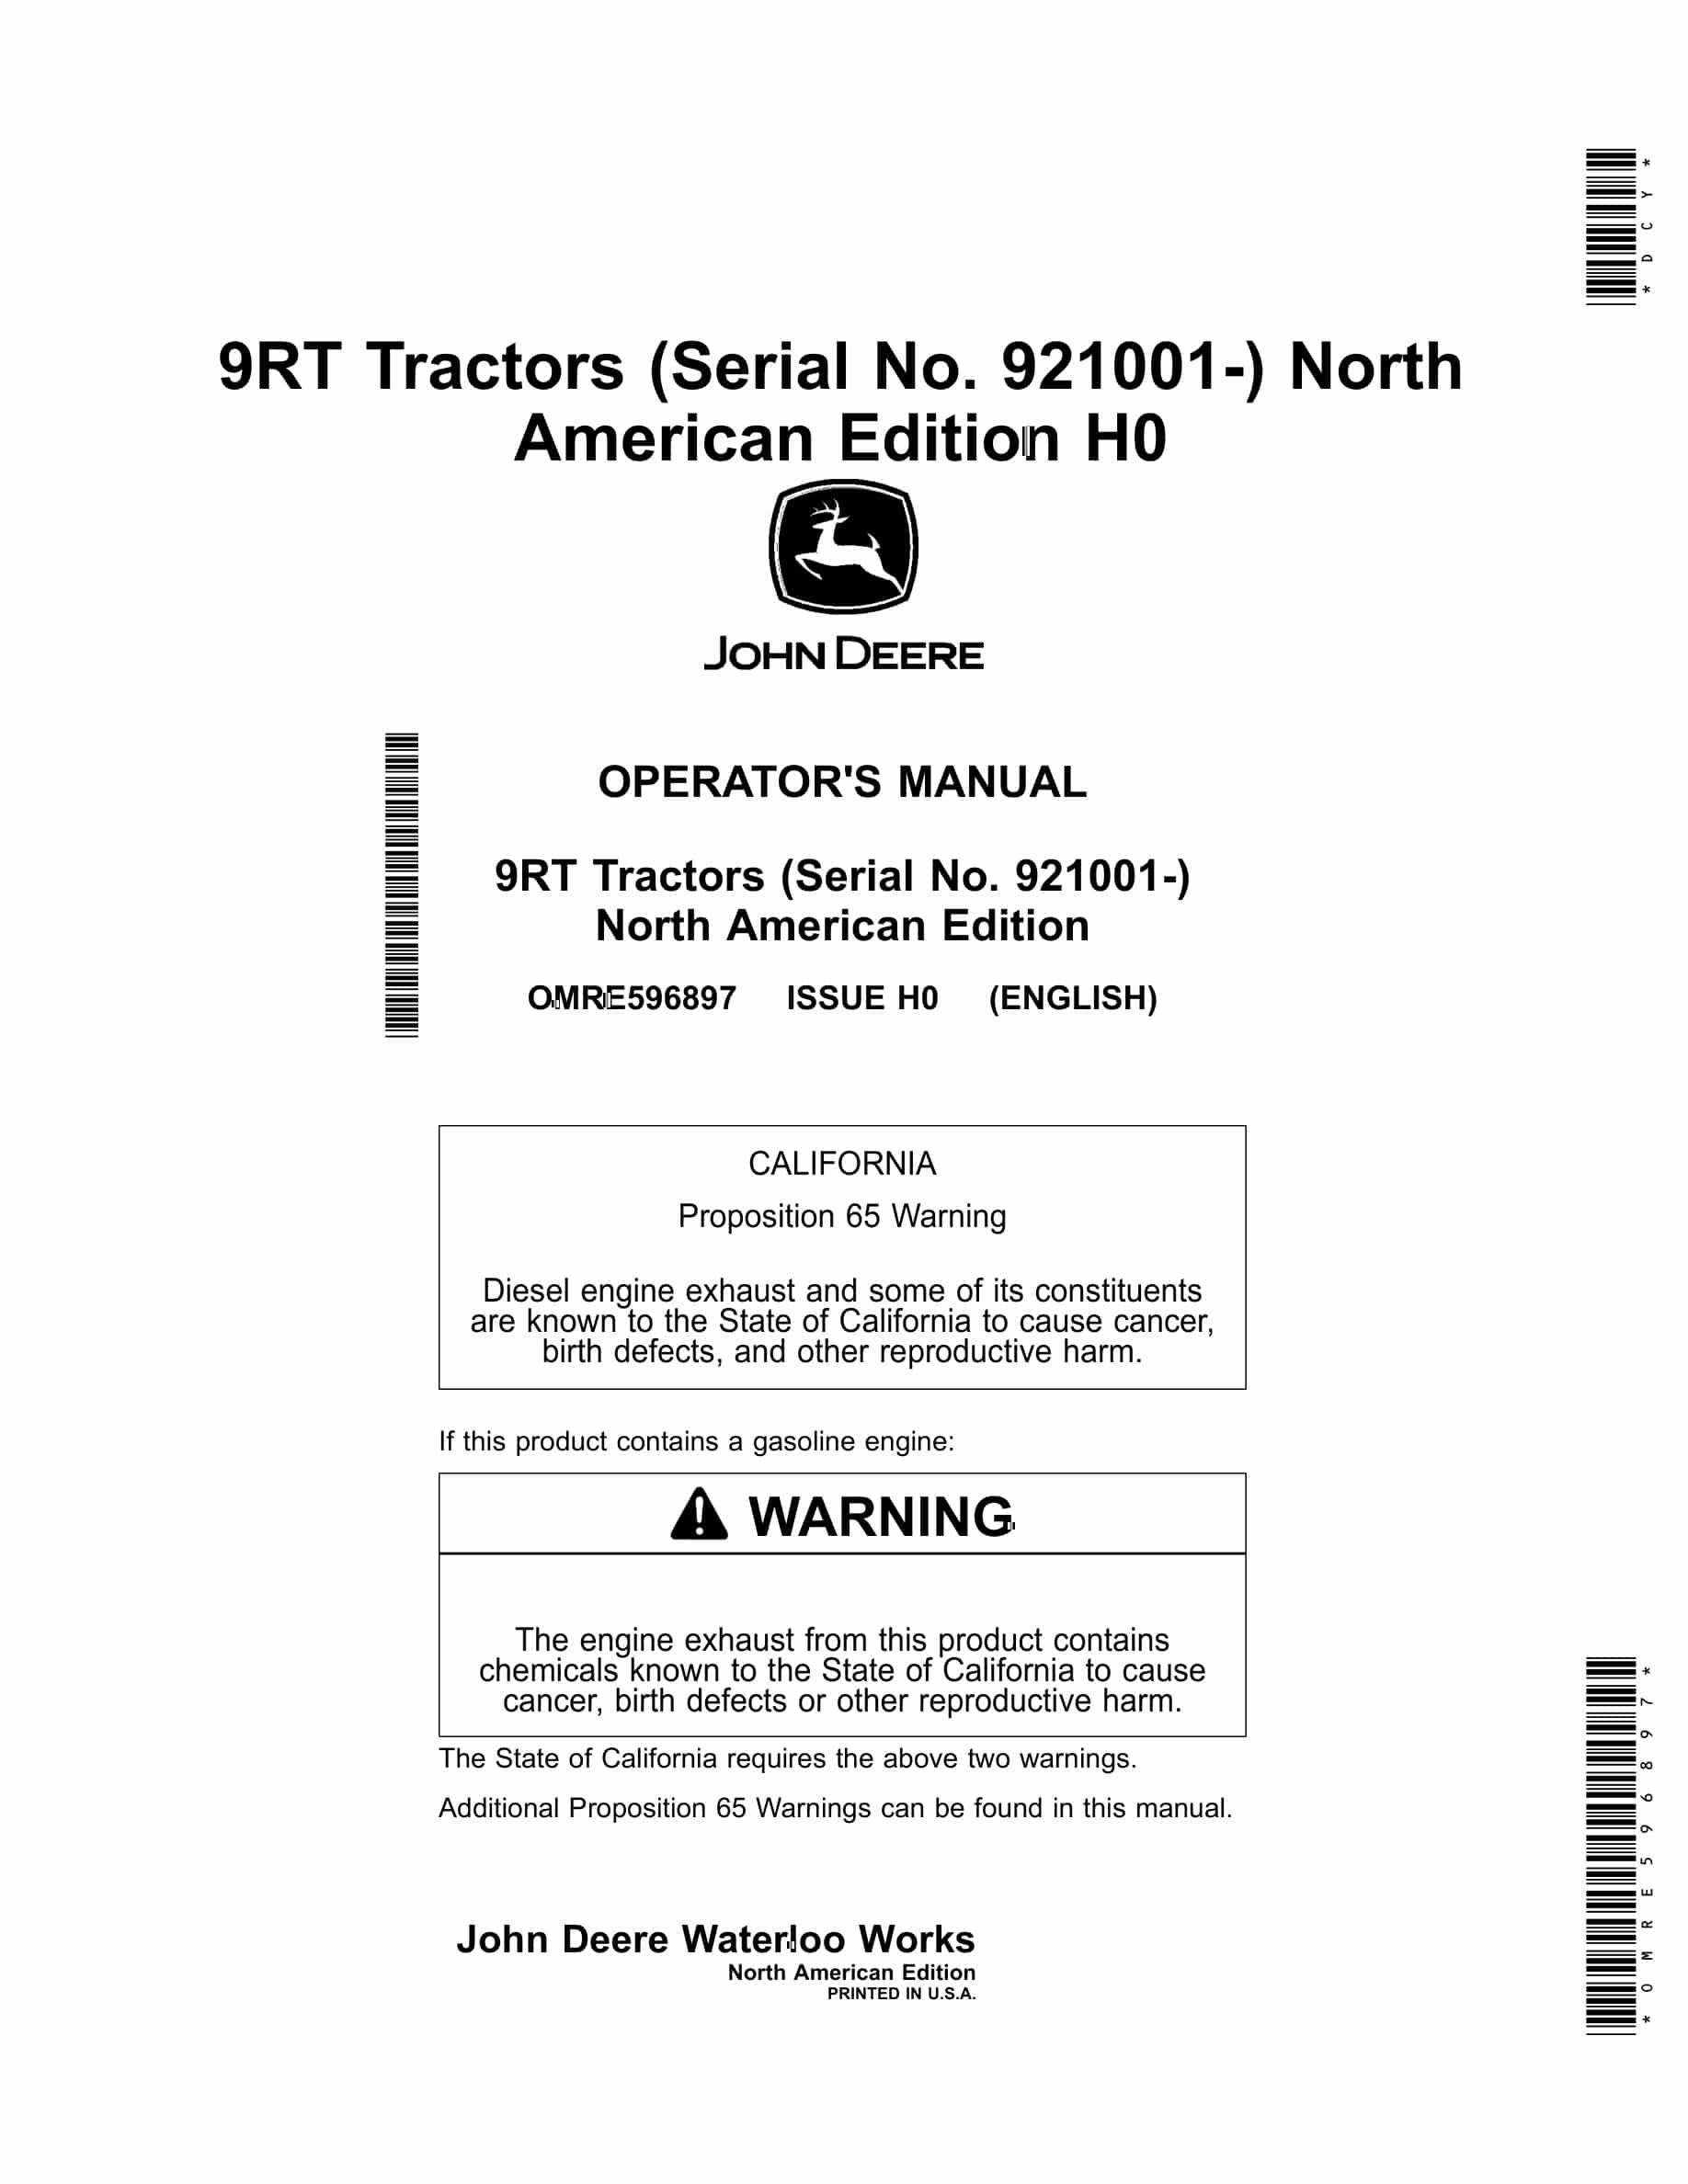 John Deere 9RT Tractor Operator Manual OMRE596897-1